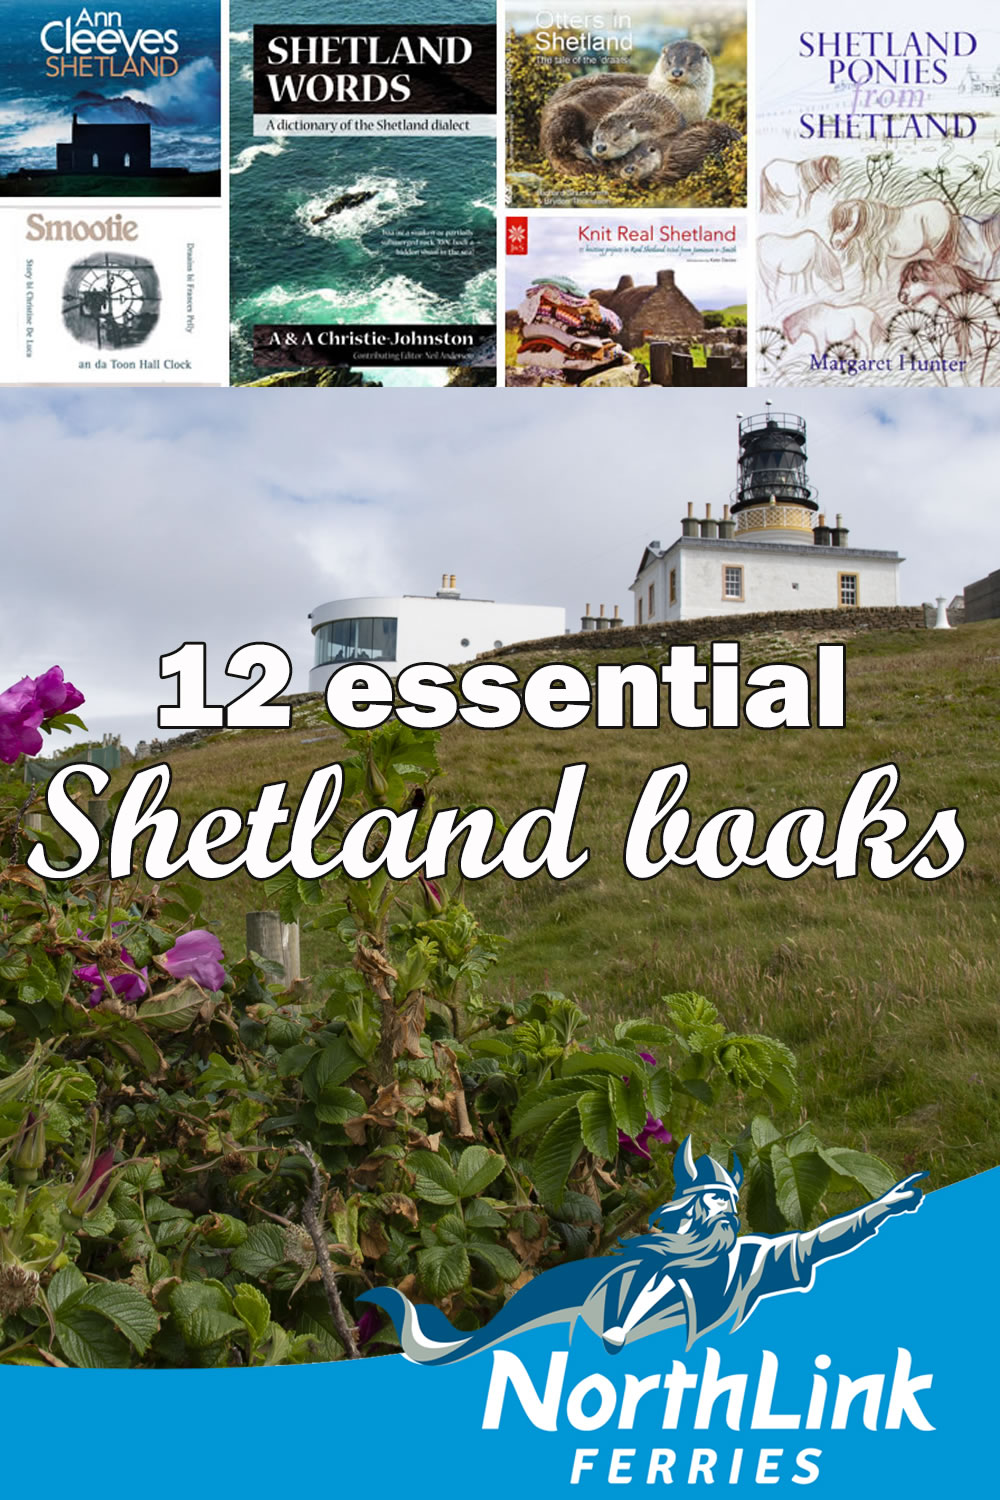 12 essential Shetland books